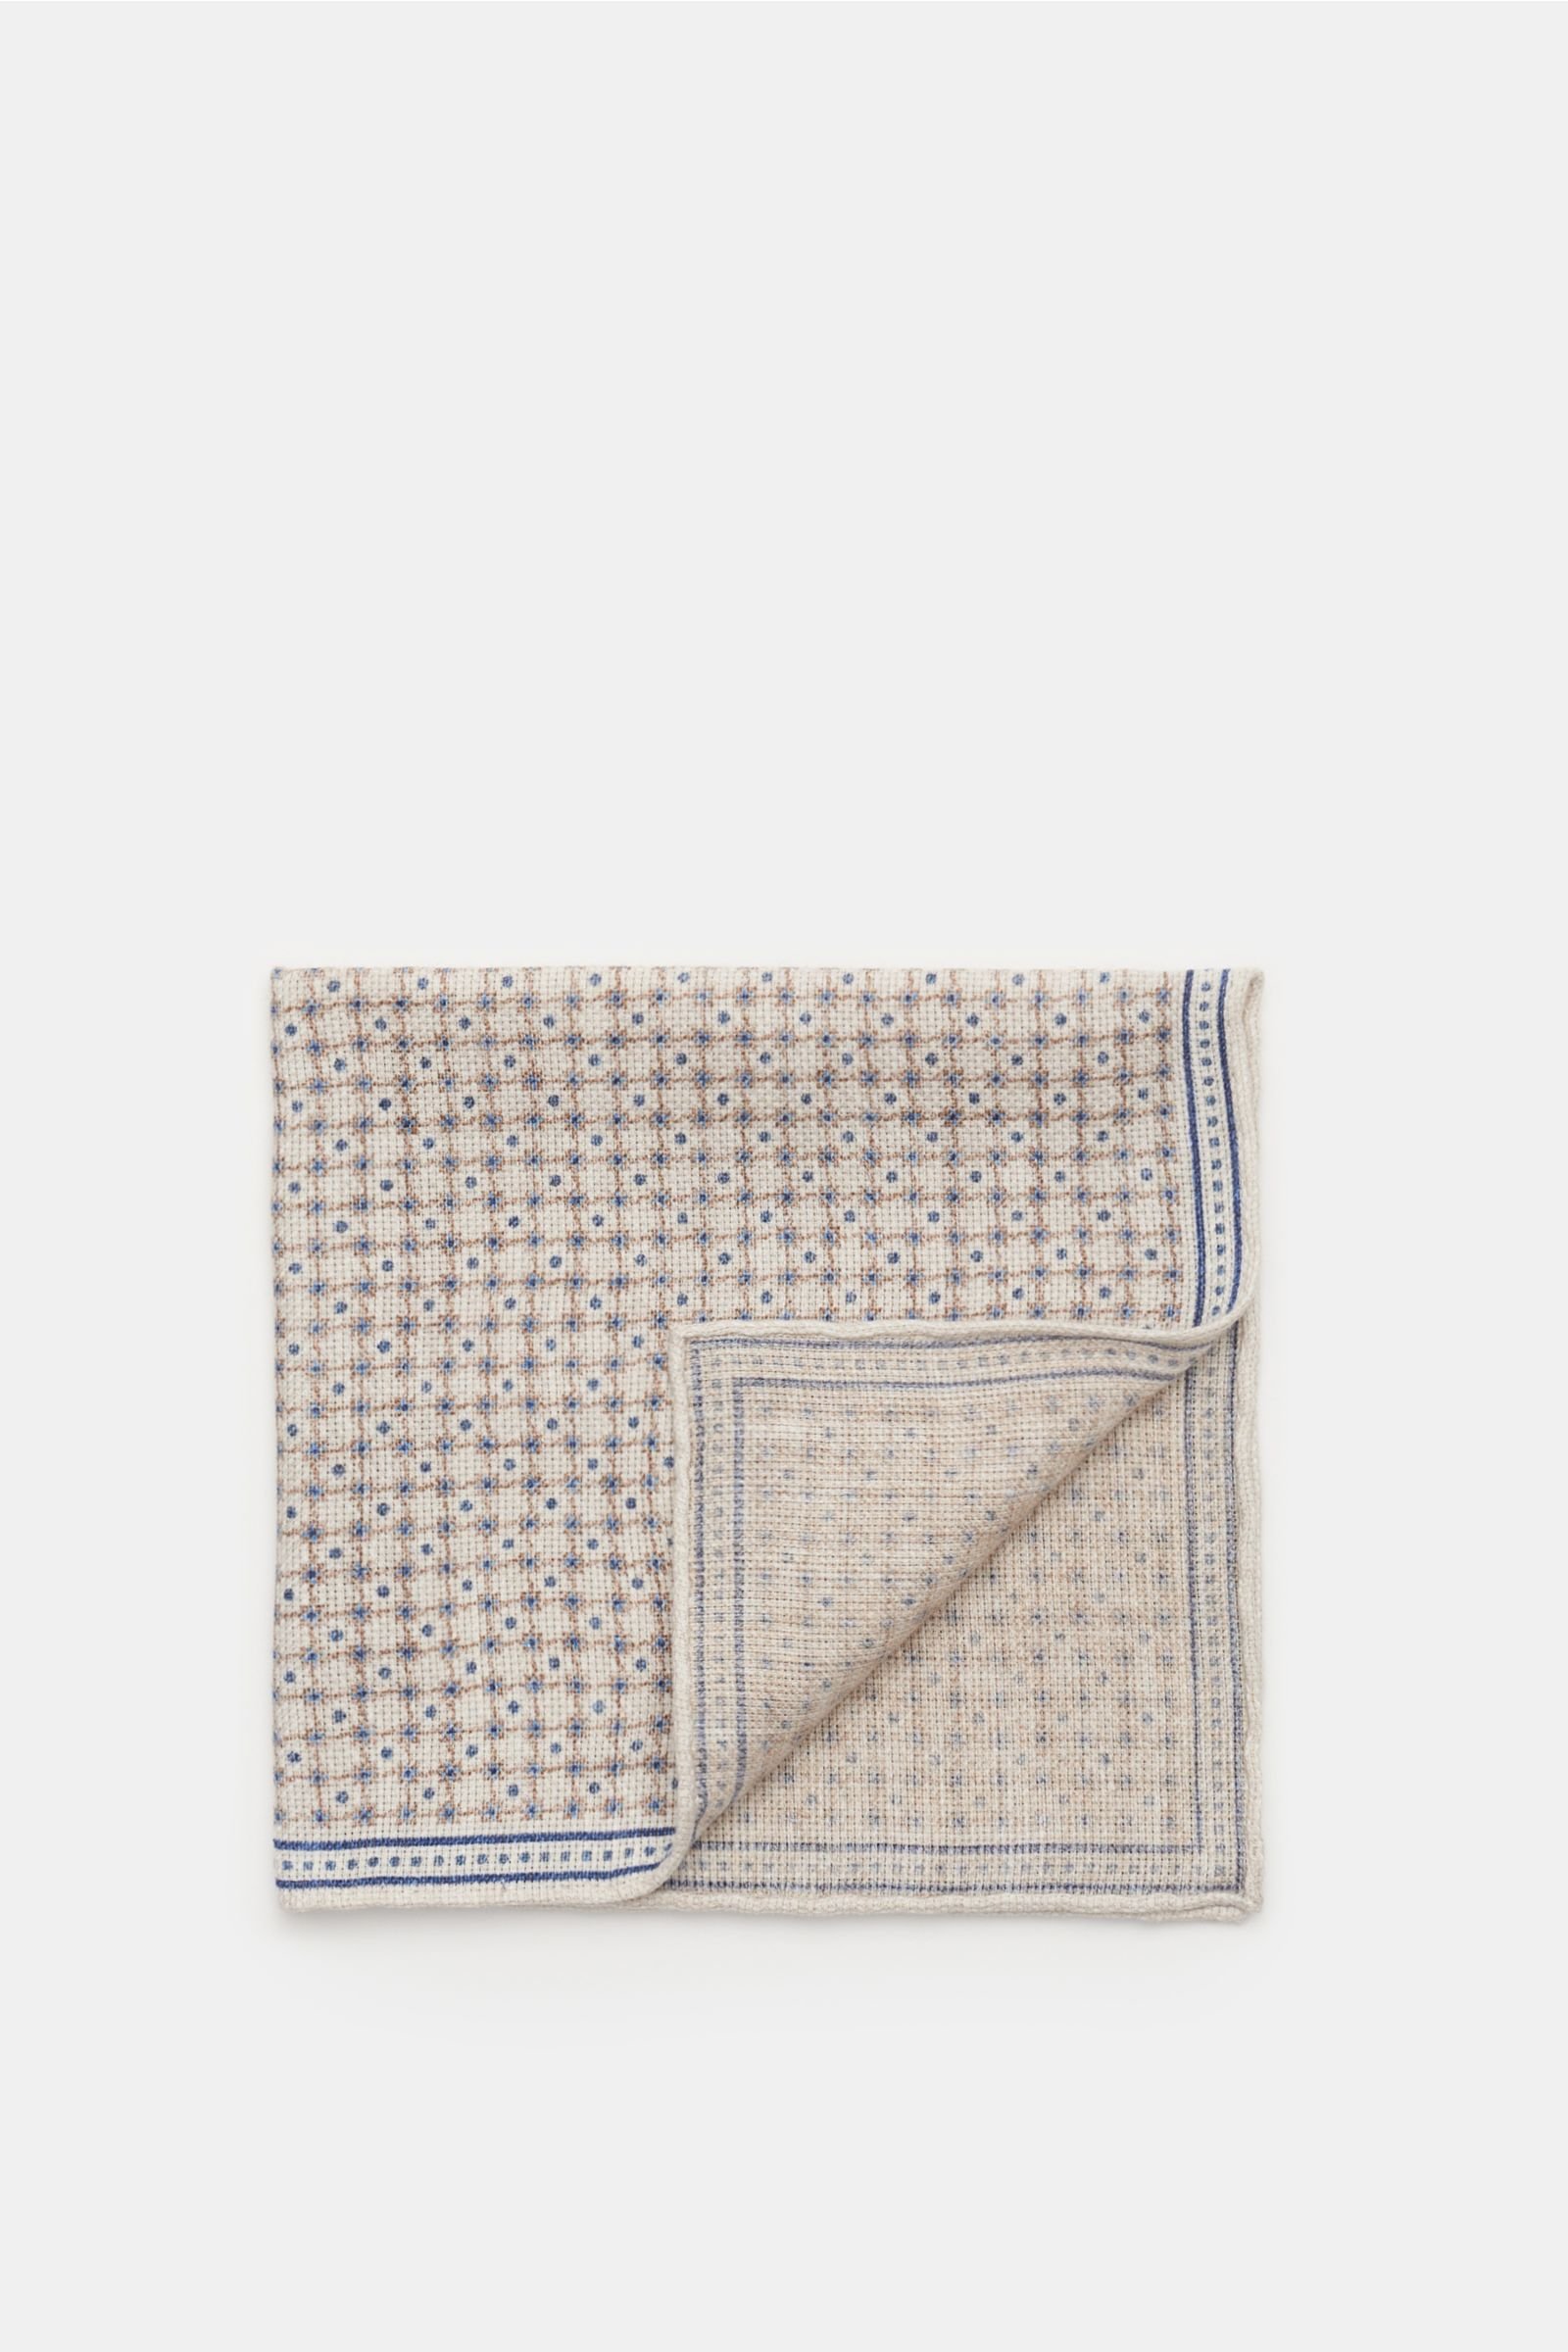 Pocket square beige/navy patterned